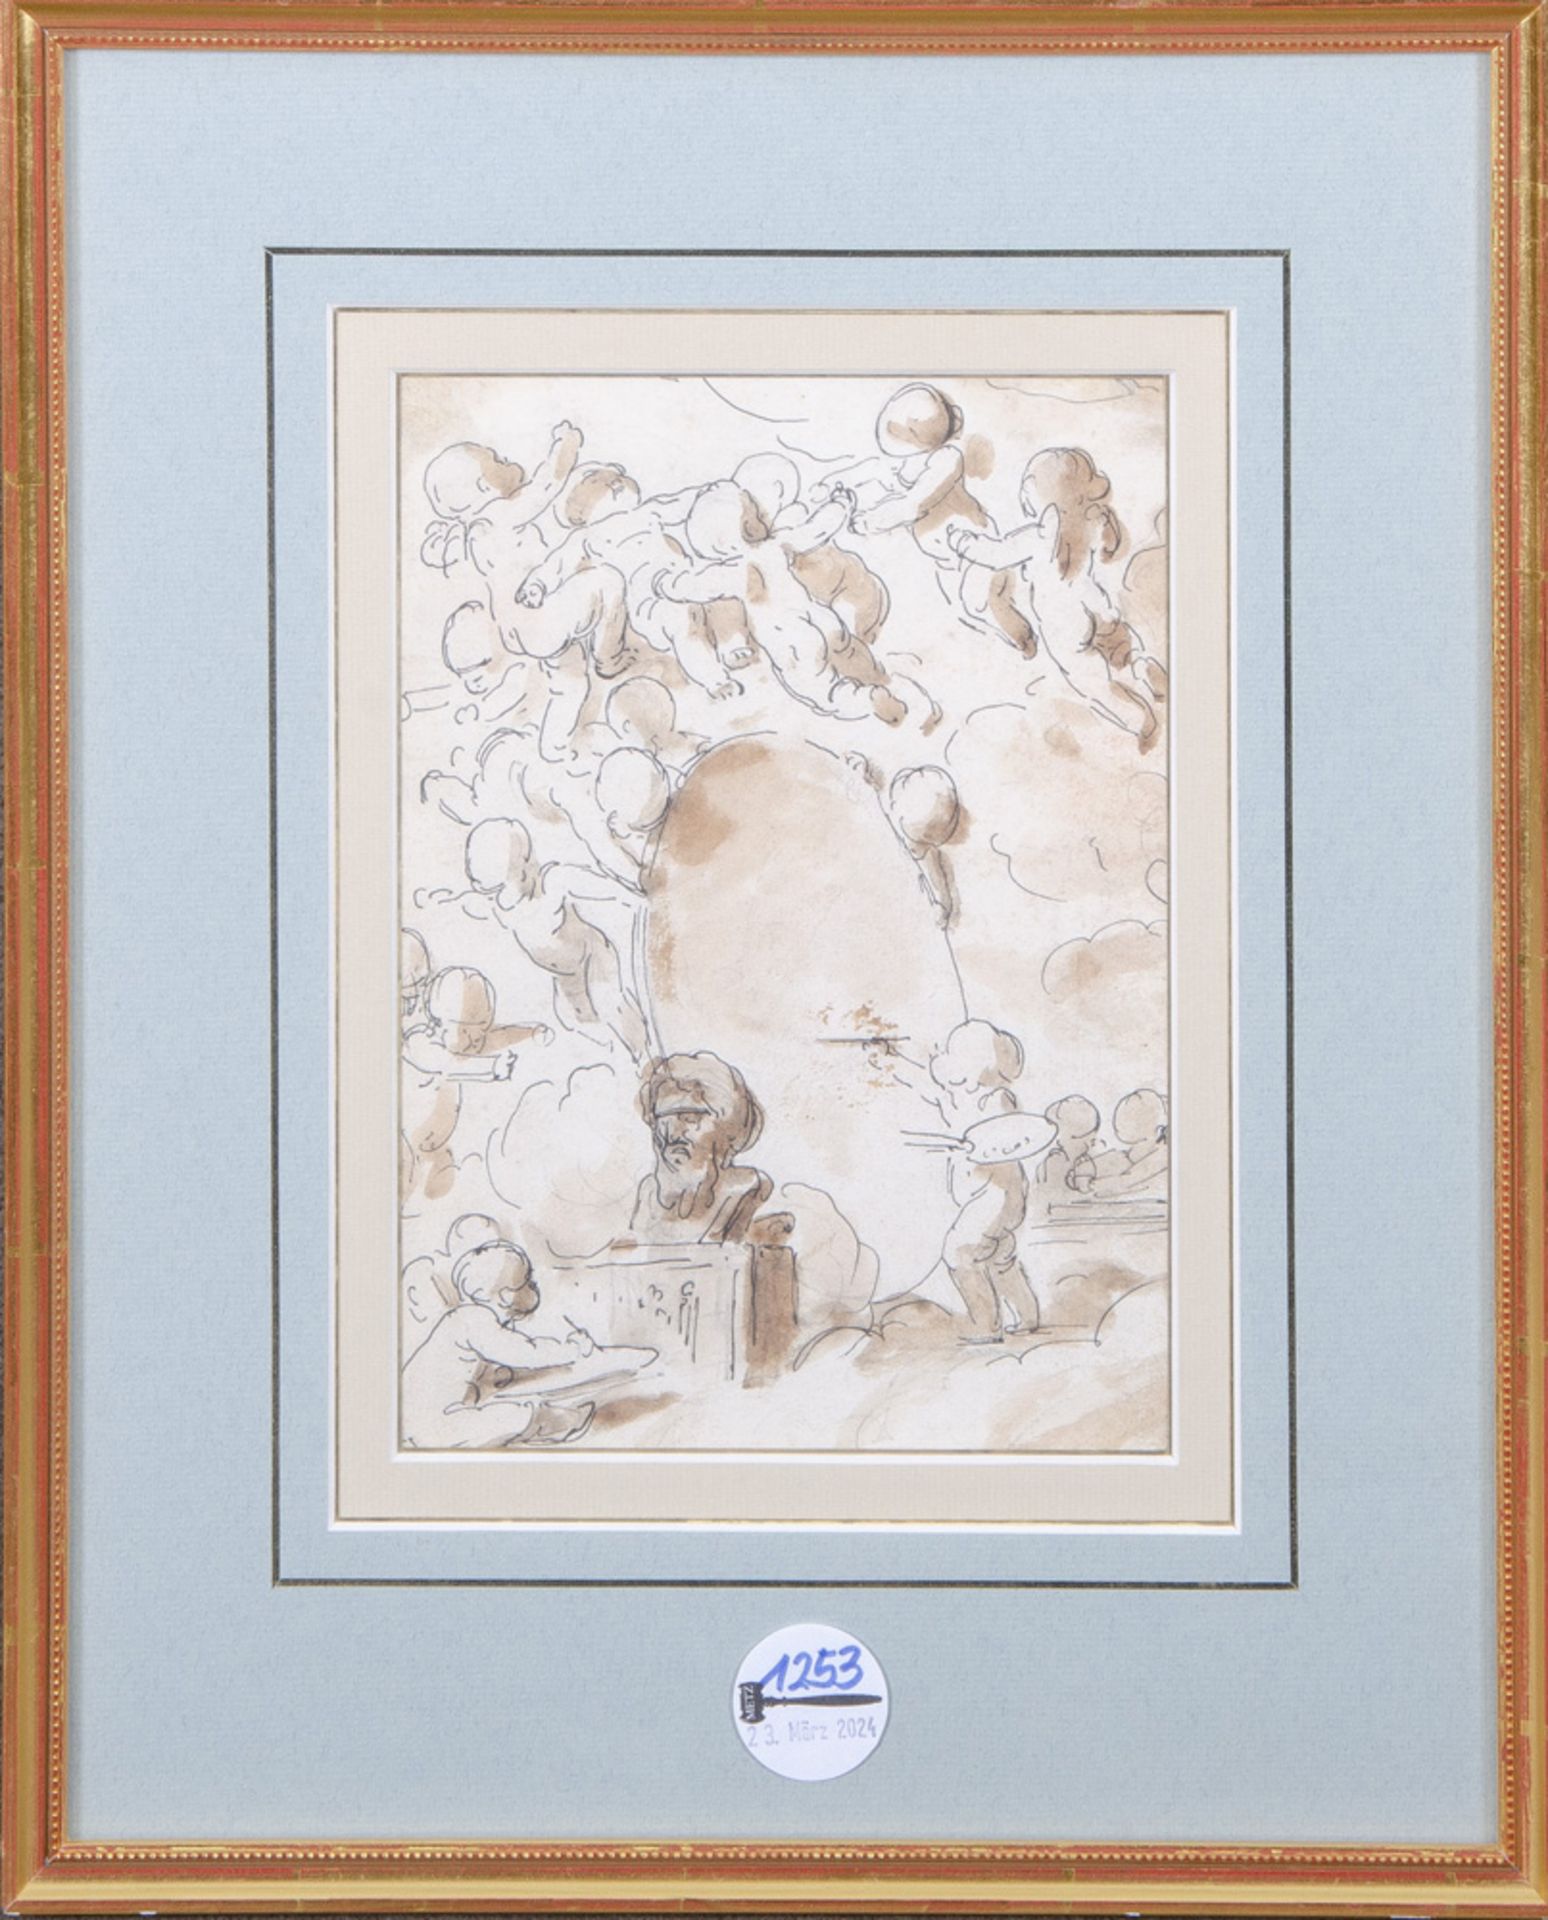 Louis Felix de la Rue (1731-1765) attrib. Putto, eine Bildnisbüste zeichnend, umgeben von